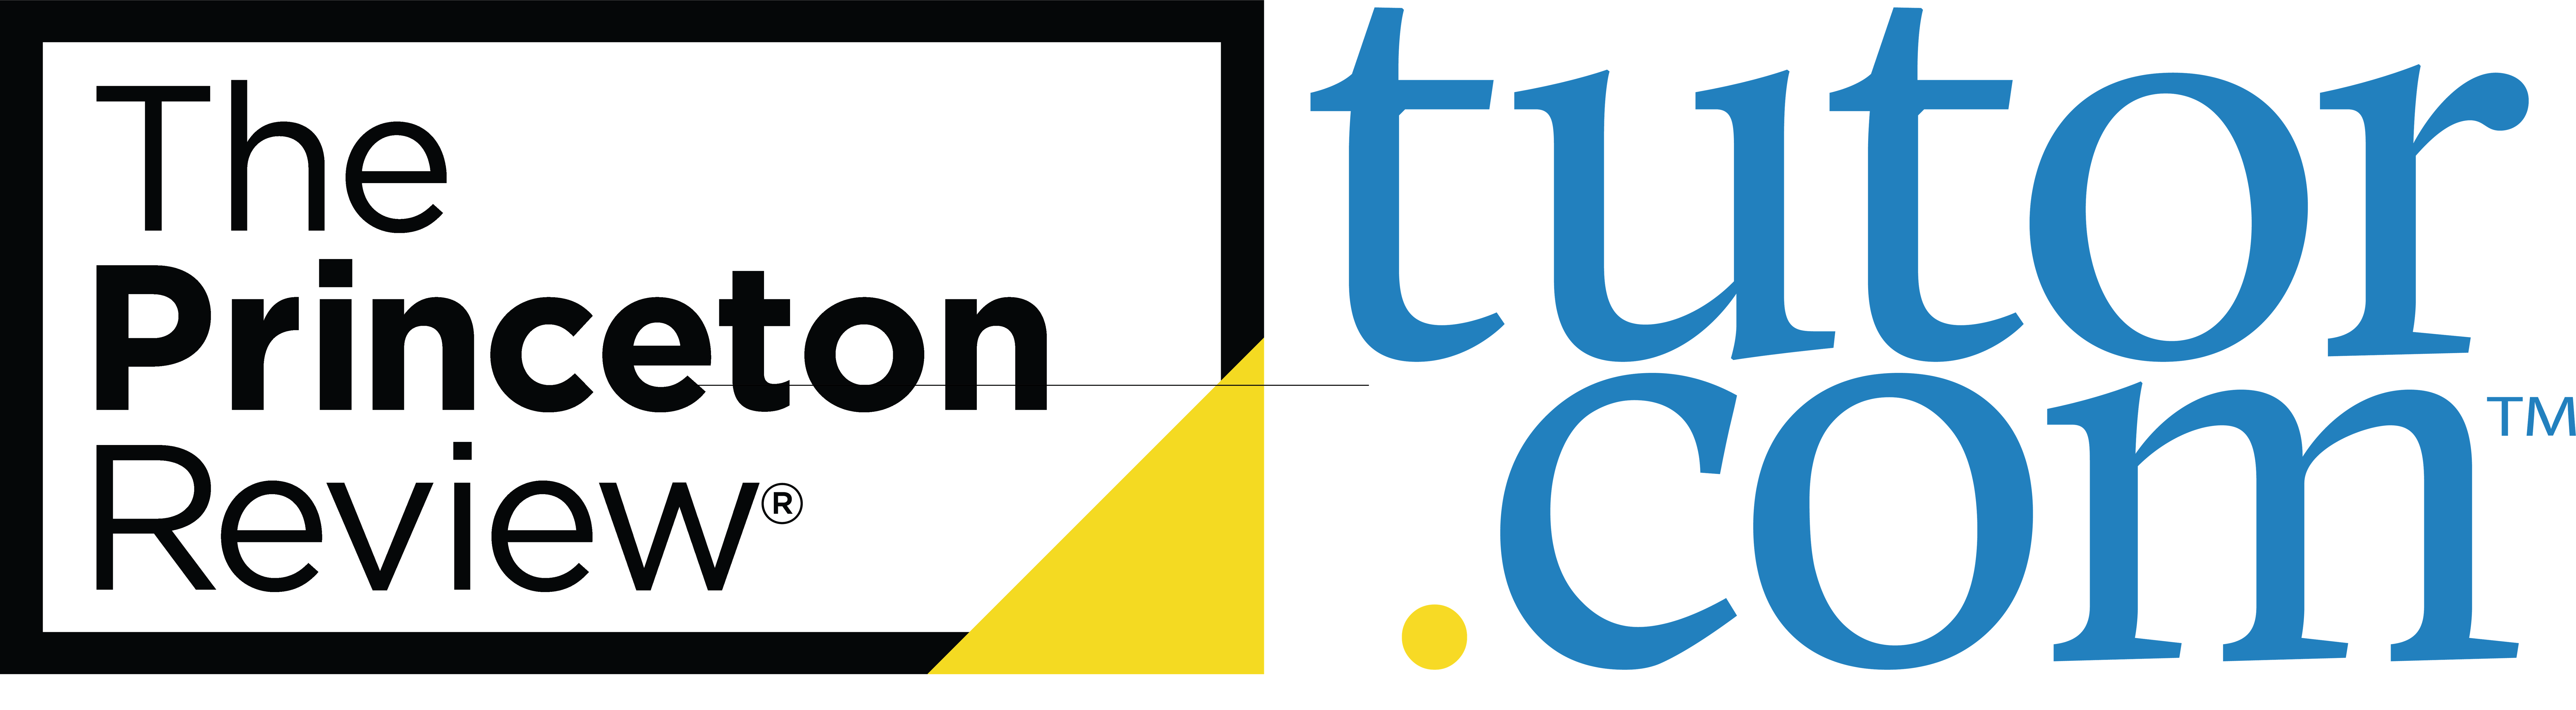 The Princetown Review/Tutor.com Logo